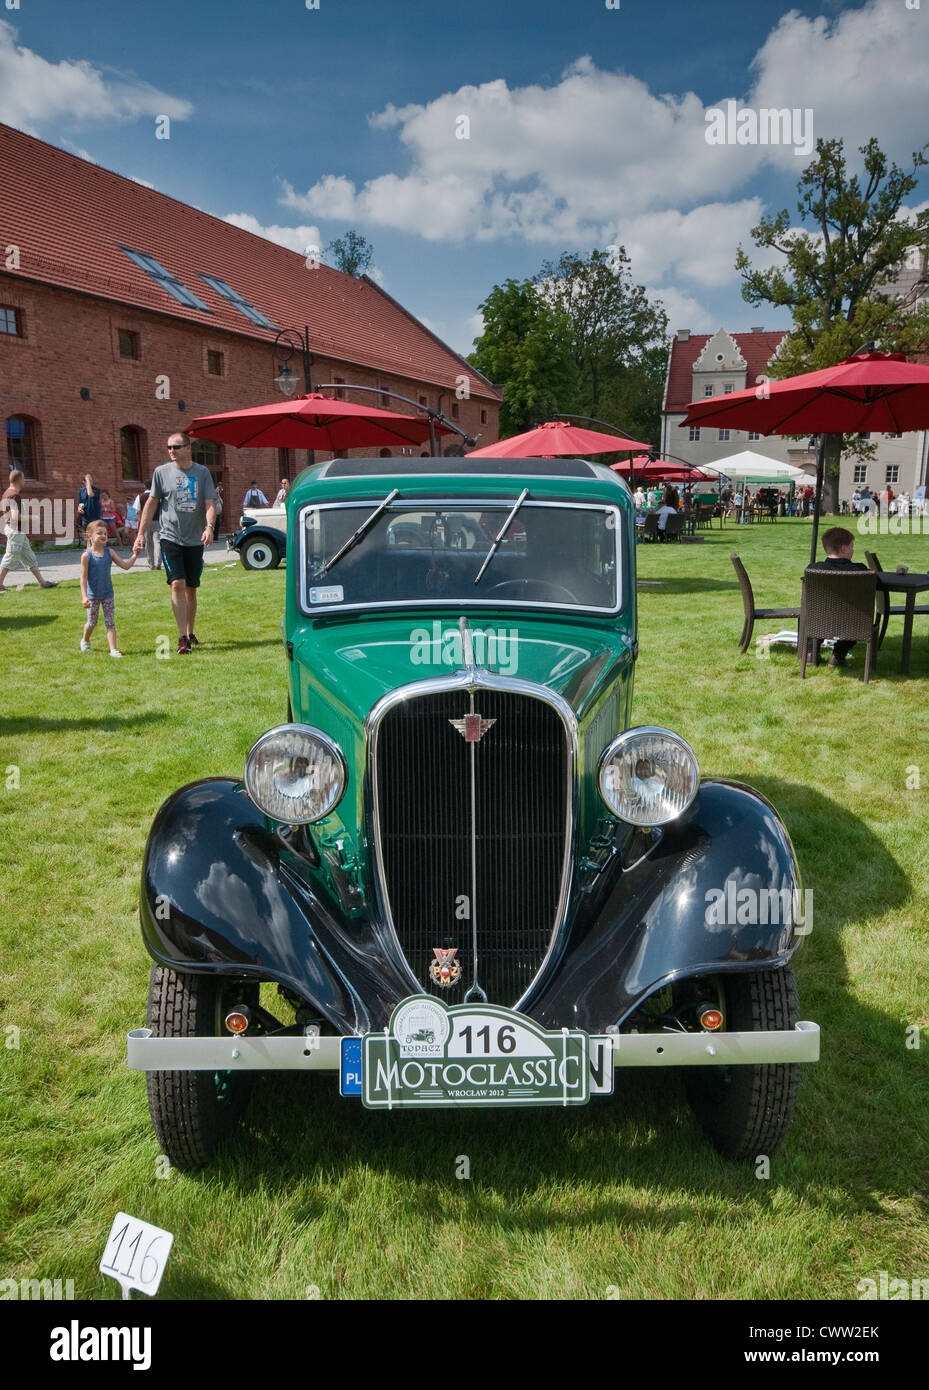 1935 Polski Fiat 508 III Junak at Motoclassic car show at Topacz Castle in Kobierzyce near Wroclaw, Lower Silesia, Poland Stock Photo